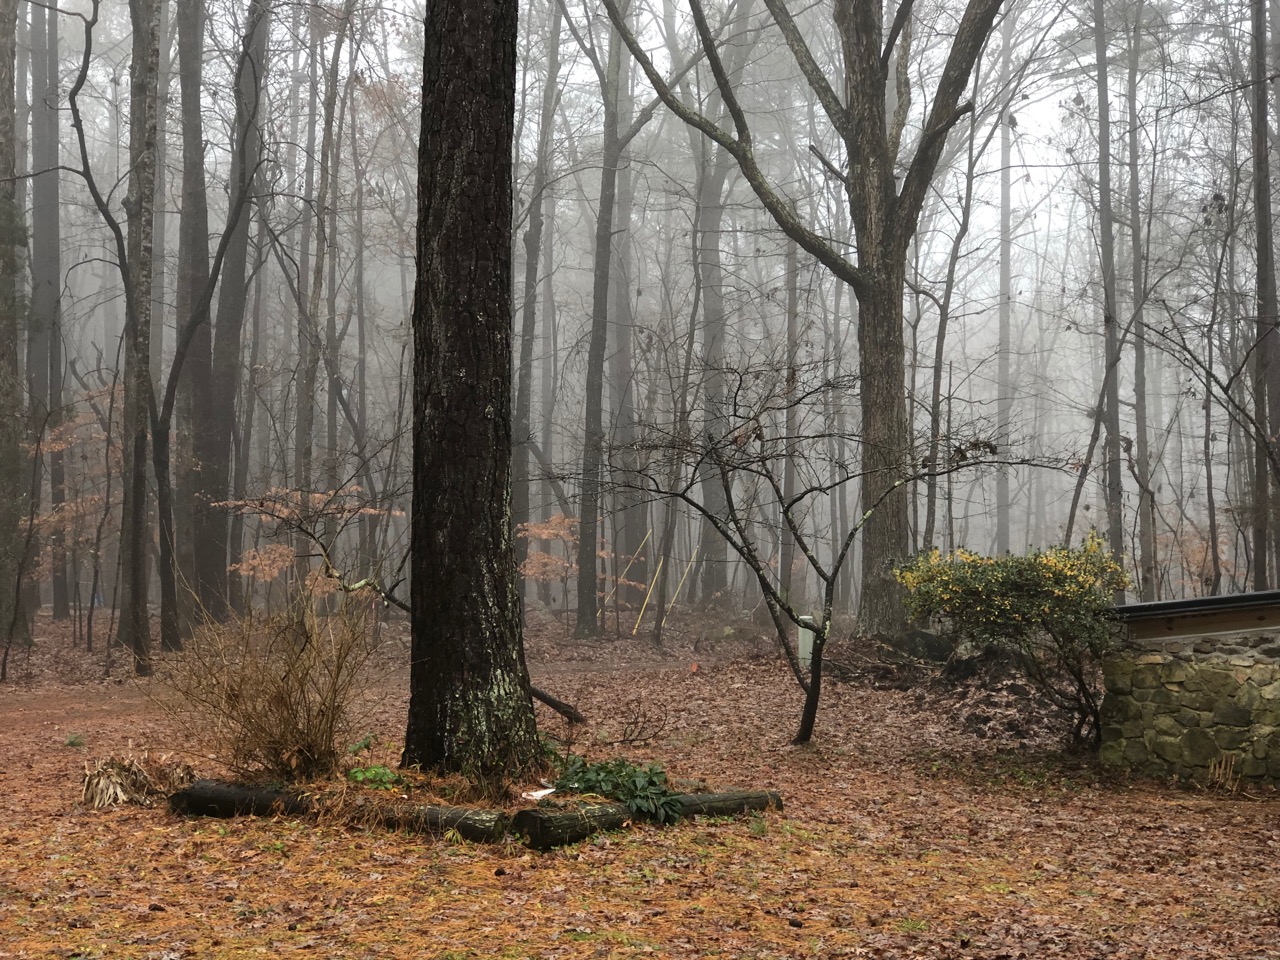 Tree trunks in the fog.